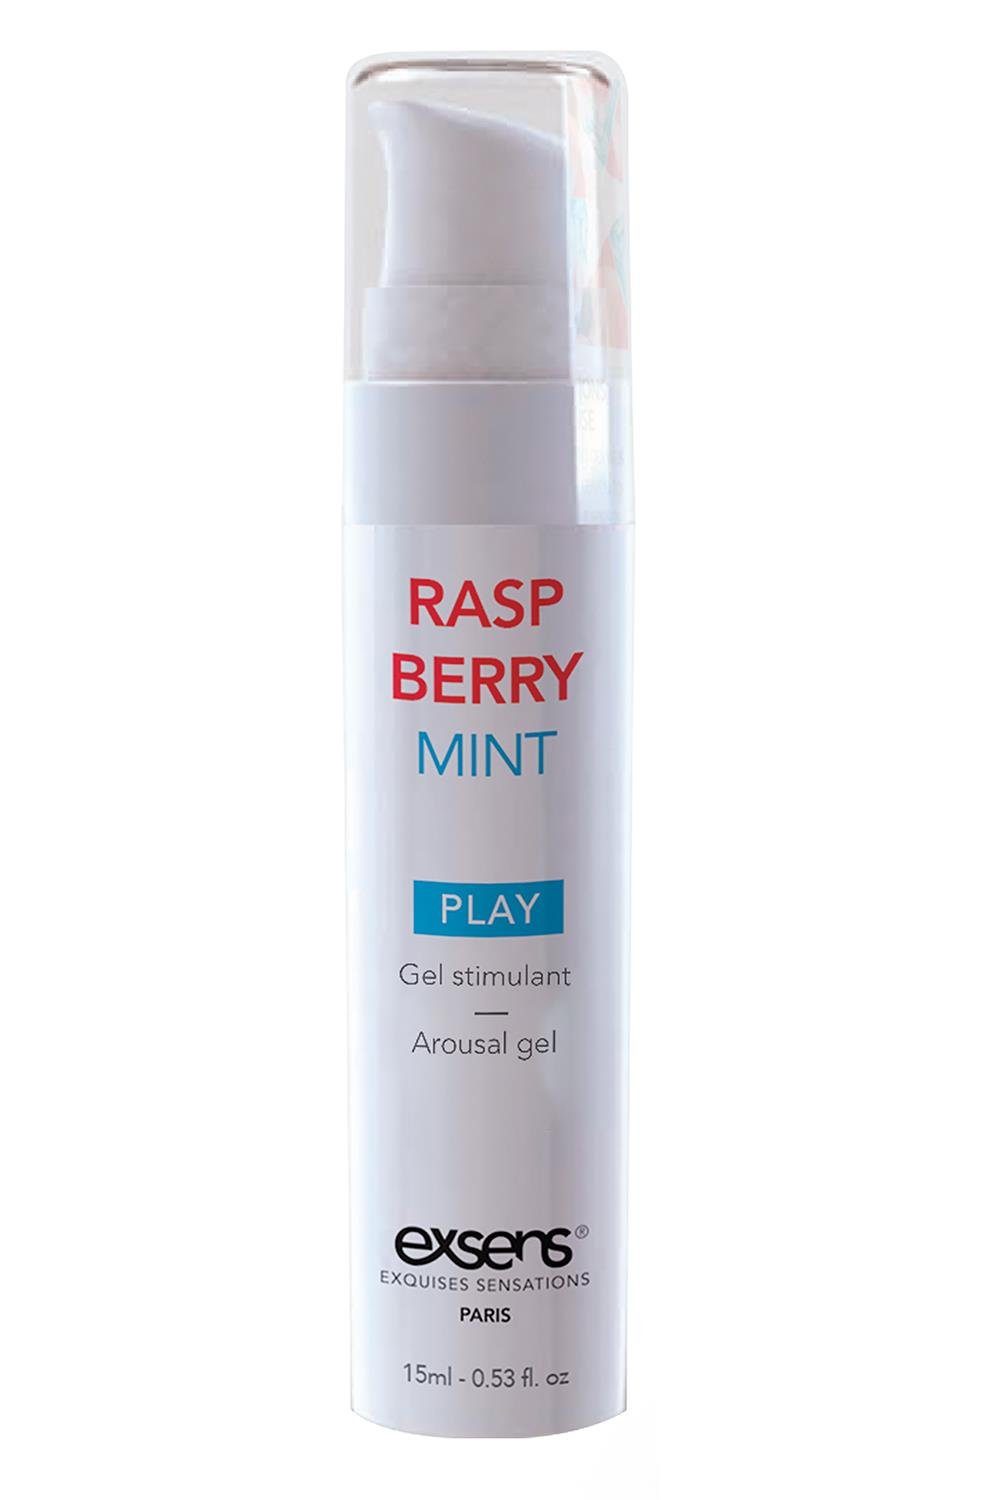 Exsens Gleit- und Massagegel Exsens Arousal Gel Raspberry Mint 15ml, Sanfte, sichere und wirksame Formel